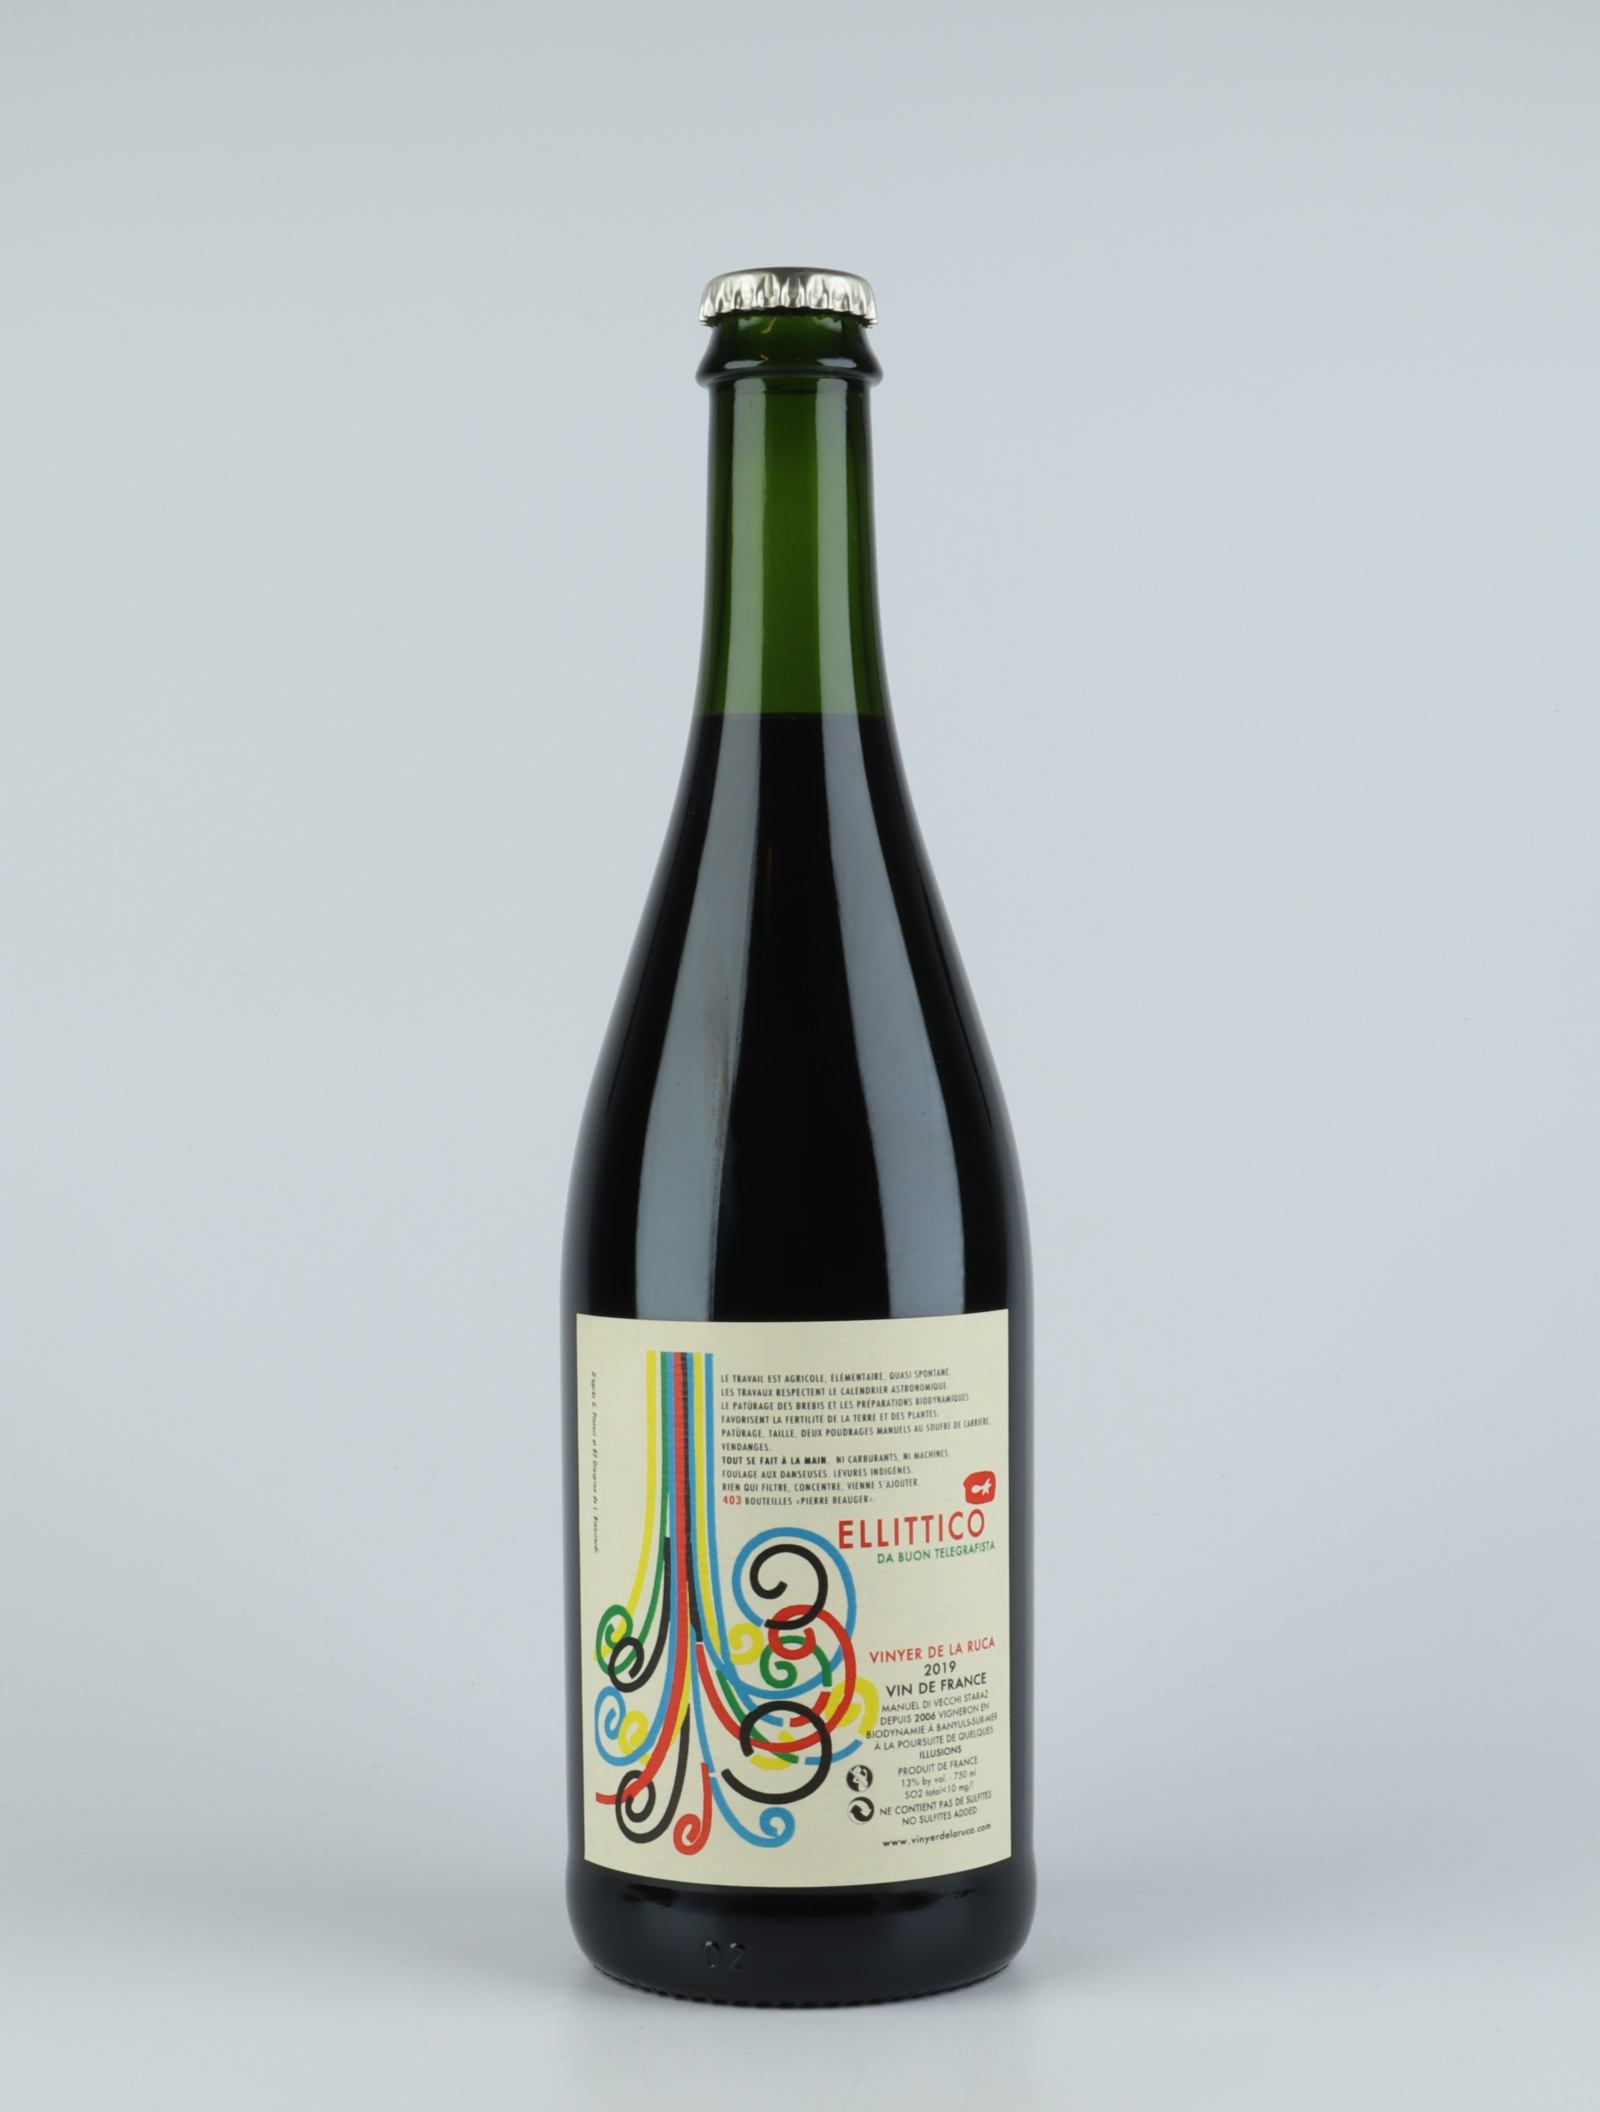 A bottle 2019 Ellittico Red wine from Vinyer de la Ruca, Rousillon in France